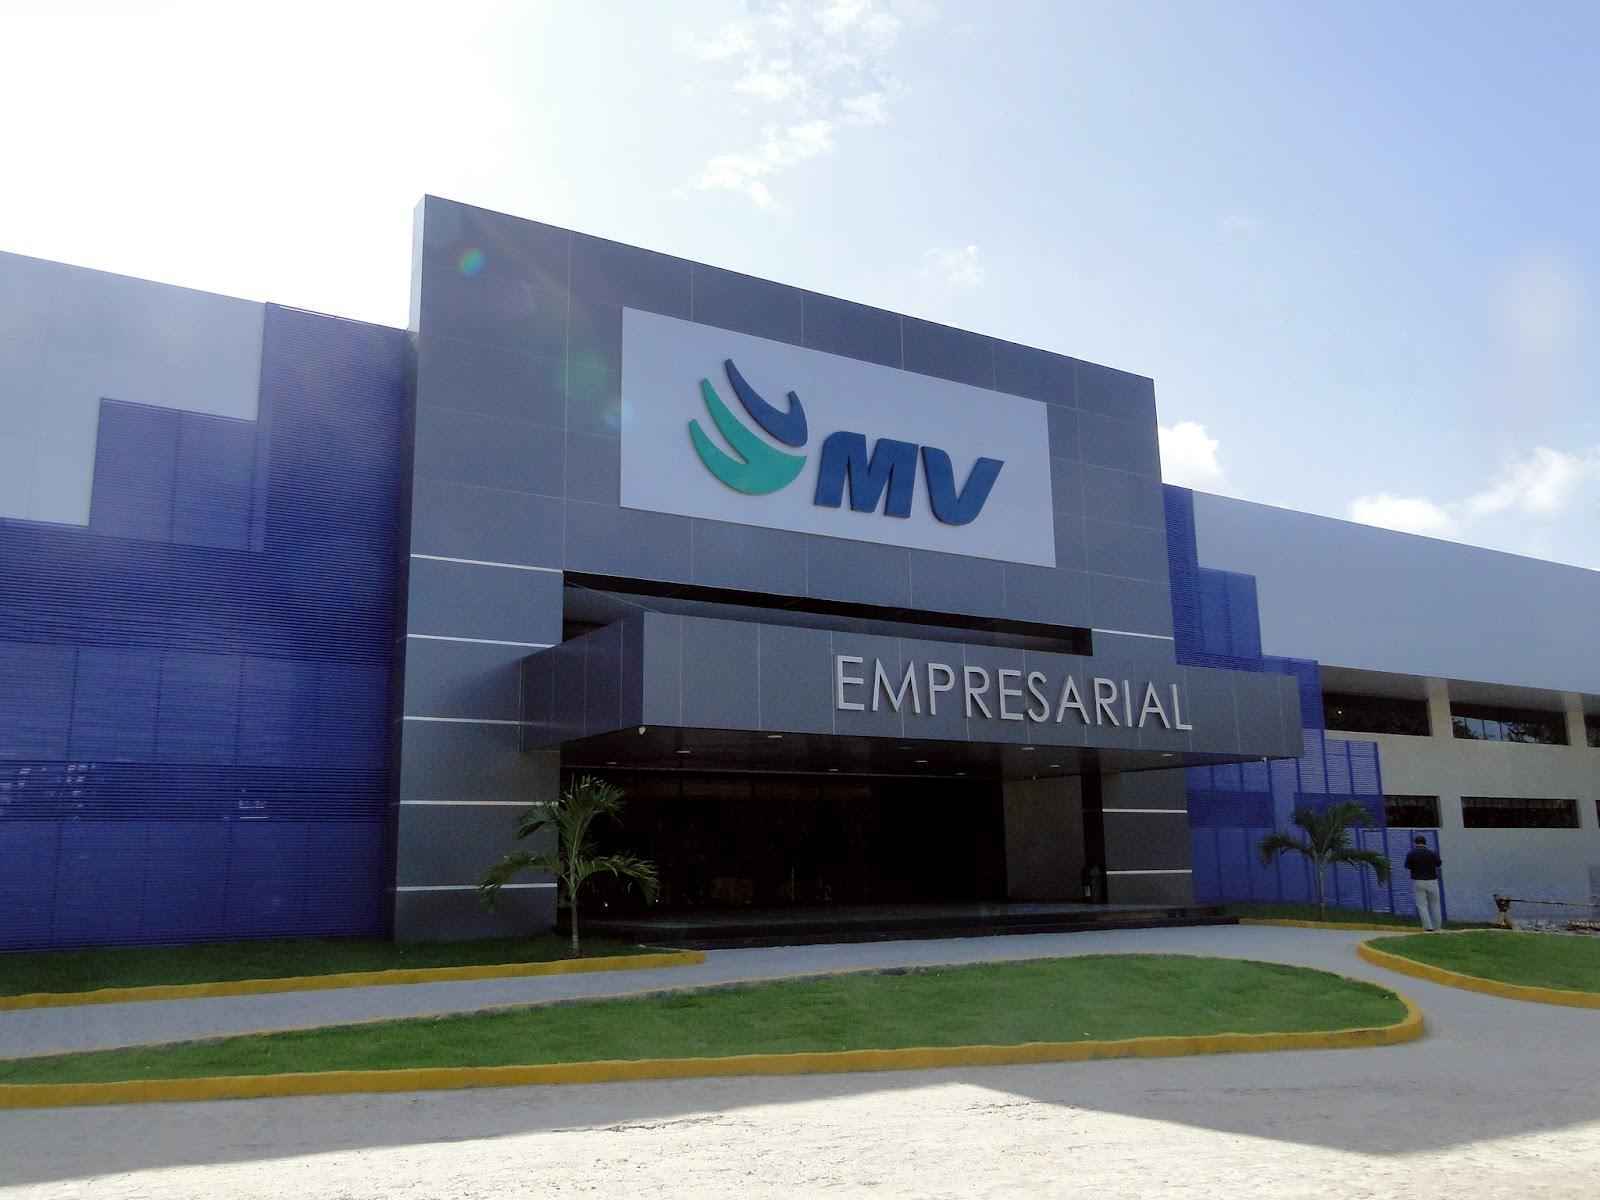 Conheça as soluções tecnológicas que ajudam a salvar vidas em Minas Gerais - MV/Divulgação